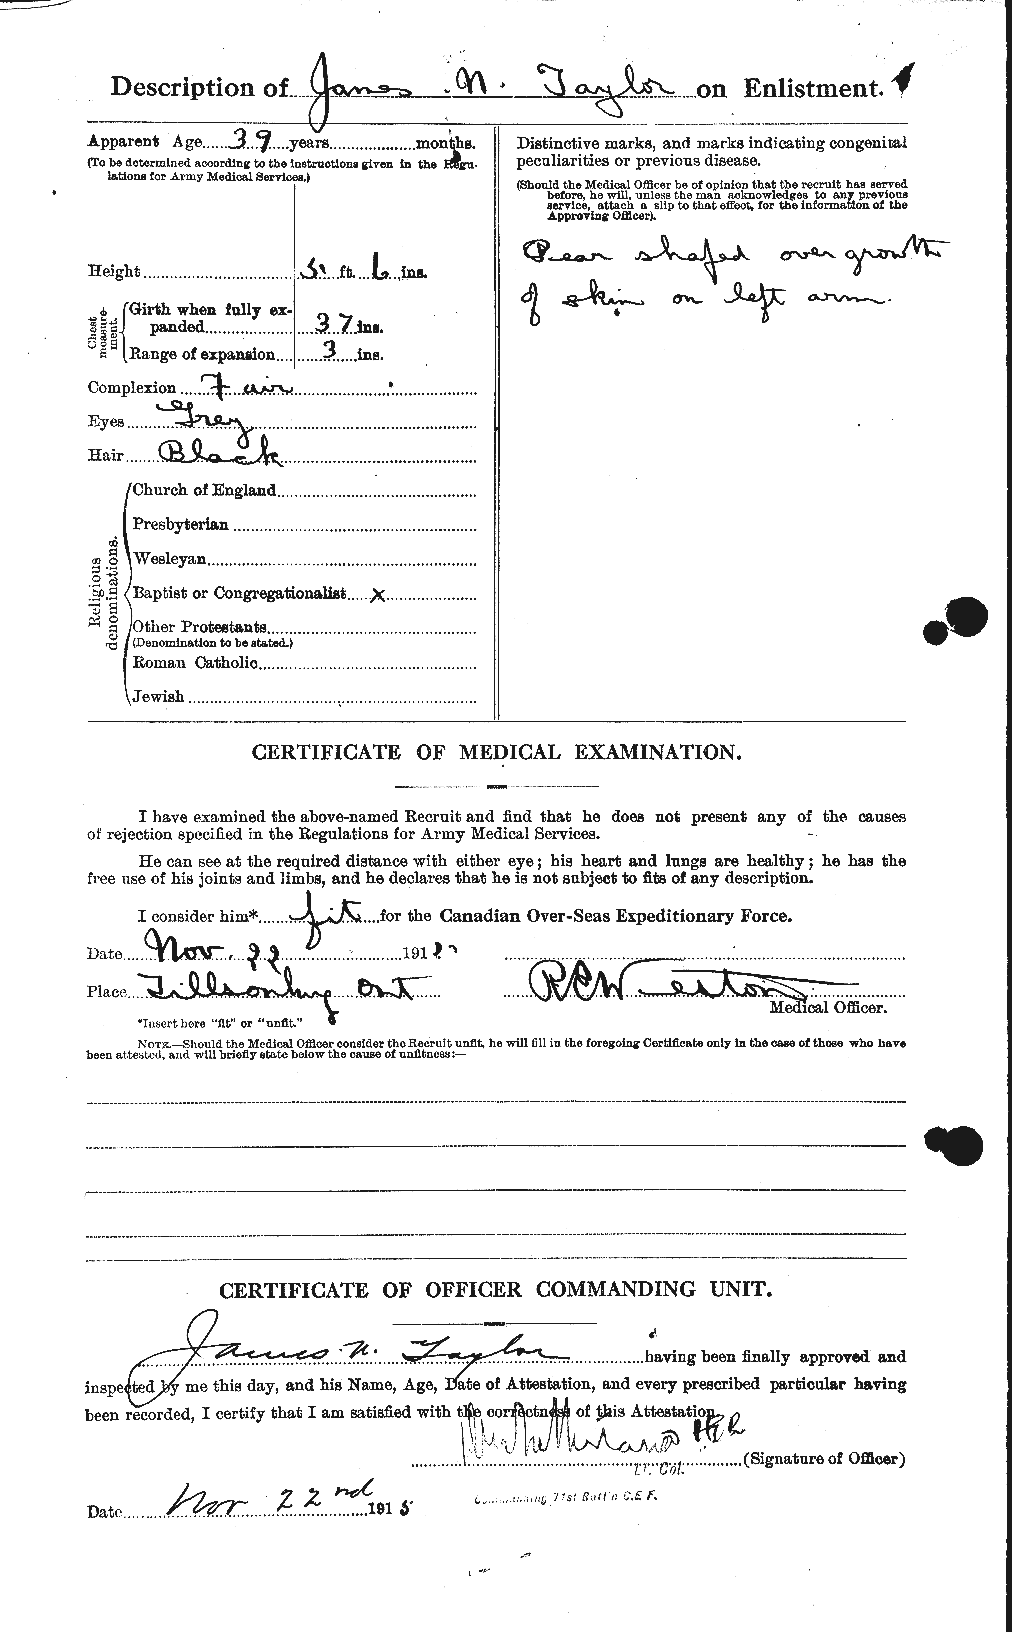 Dossiers du Personnel de la Première Guerre mondiale - CEC 626944b